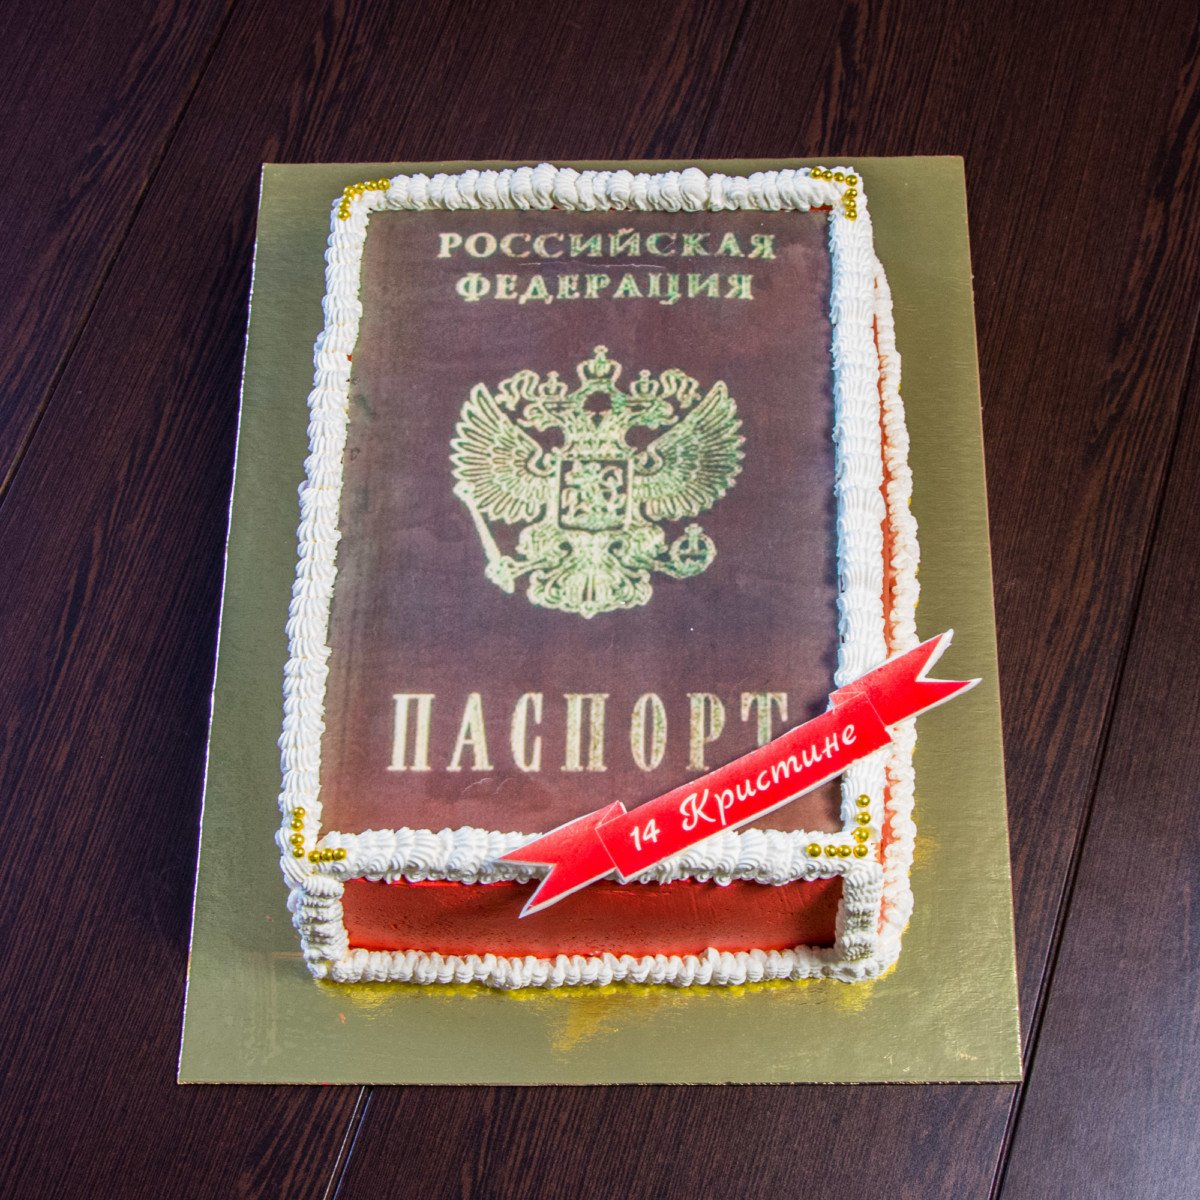 Торт паспорт для мальчика кремовый